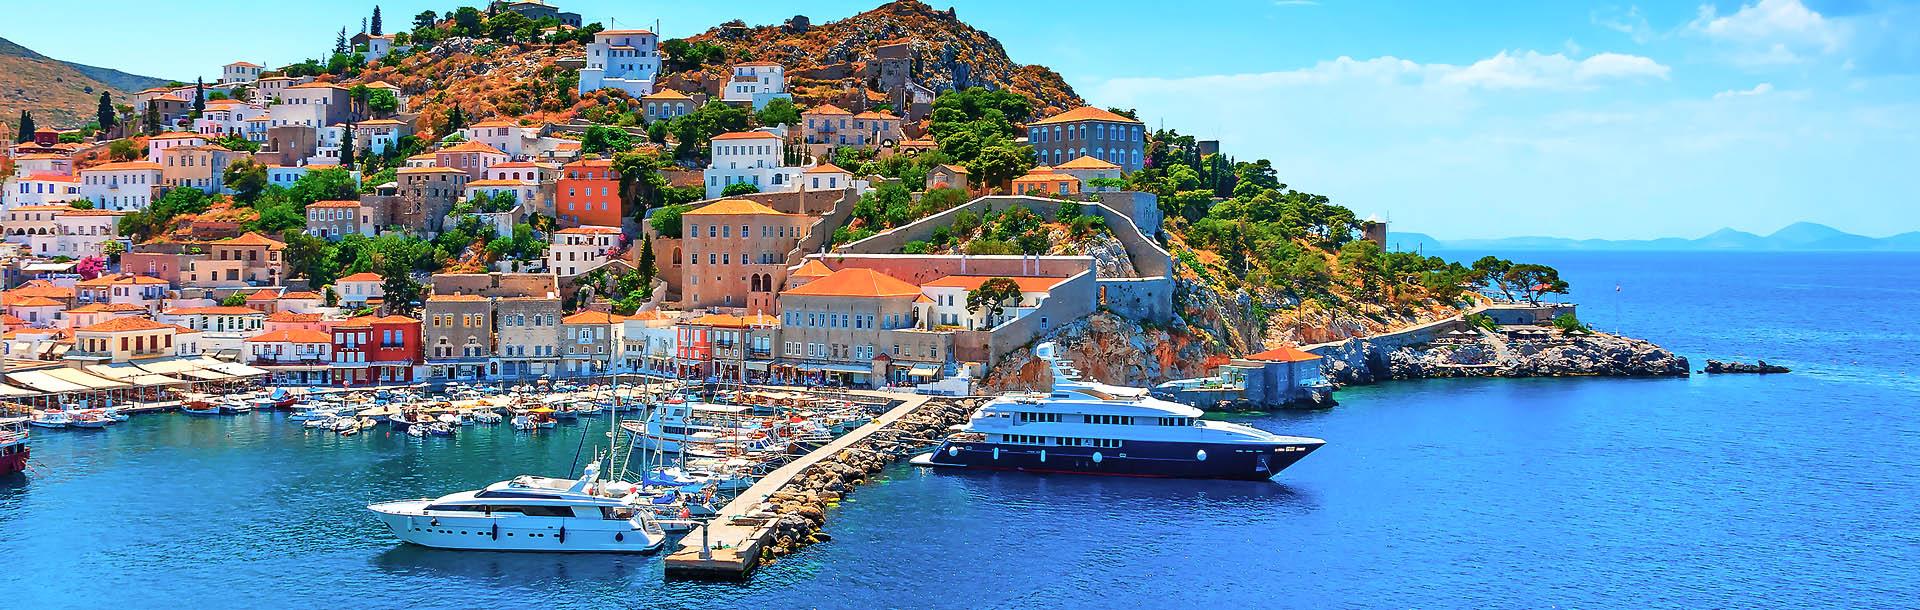 Впечатляющий остров Греции - Идра (Гидра)